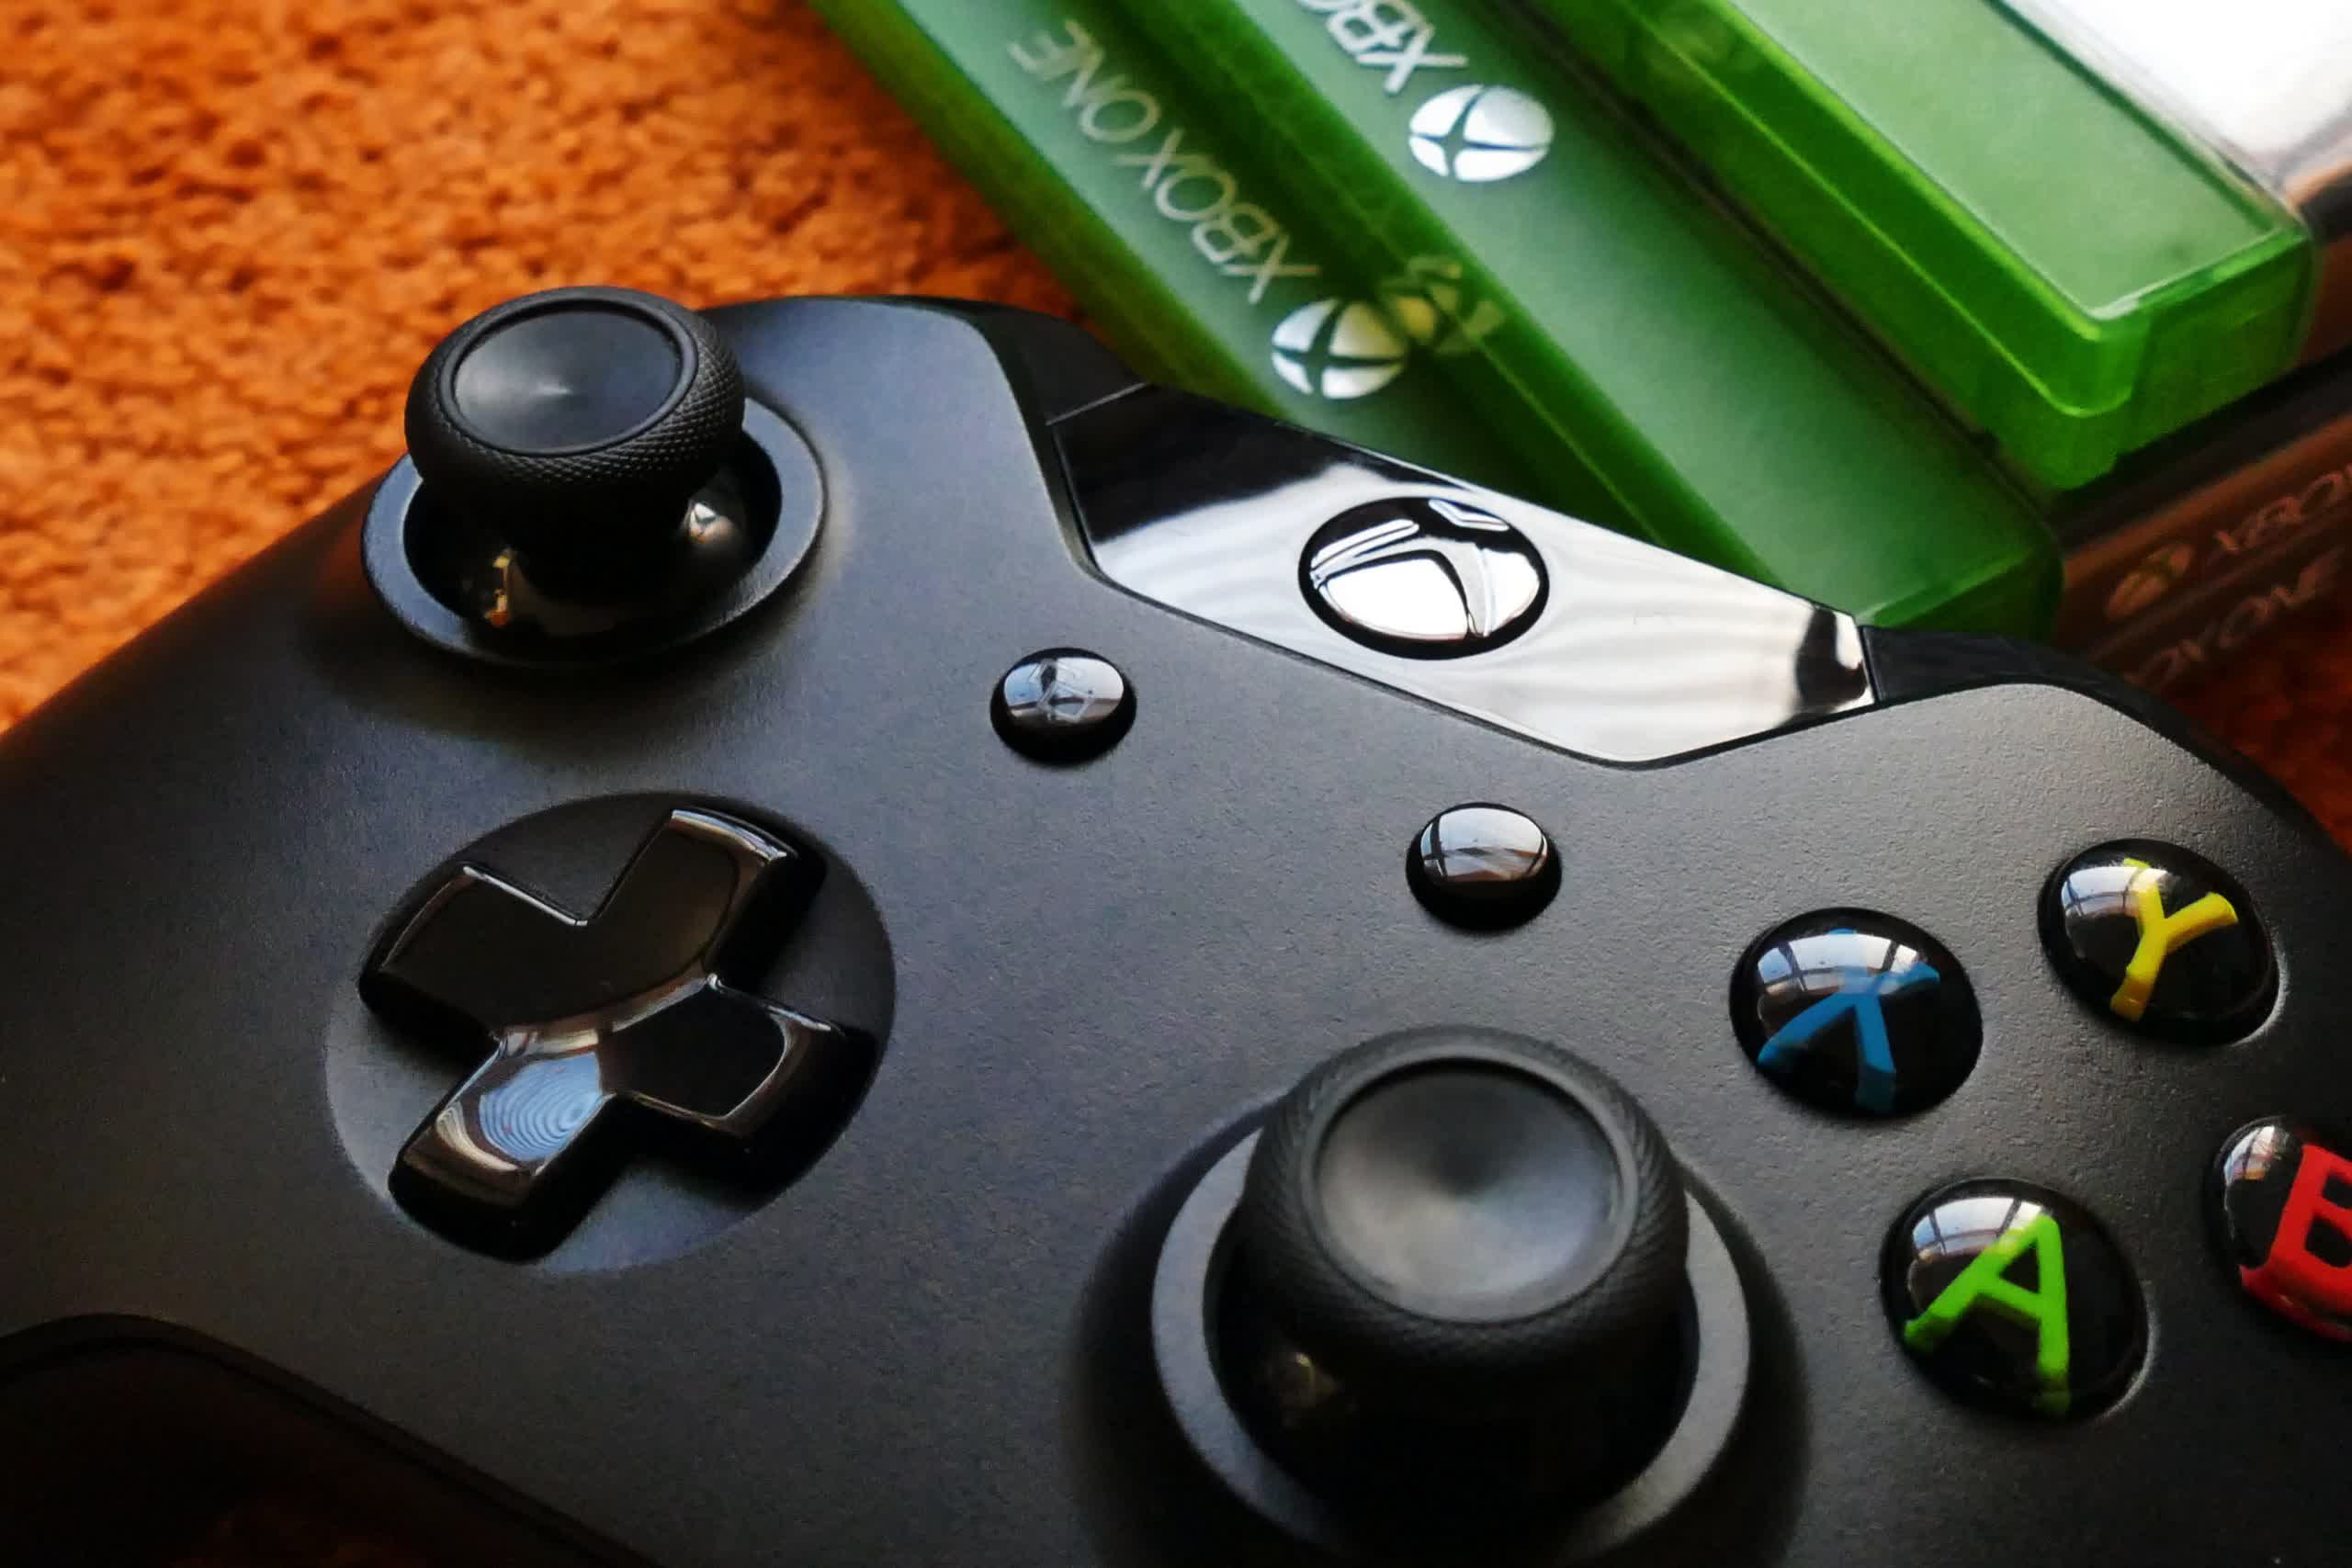 Se espera que Microsoft continúe fabricando consolas Xbox; el jueves se realizará un anuncio importante